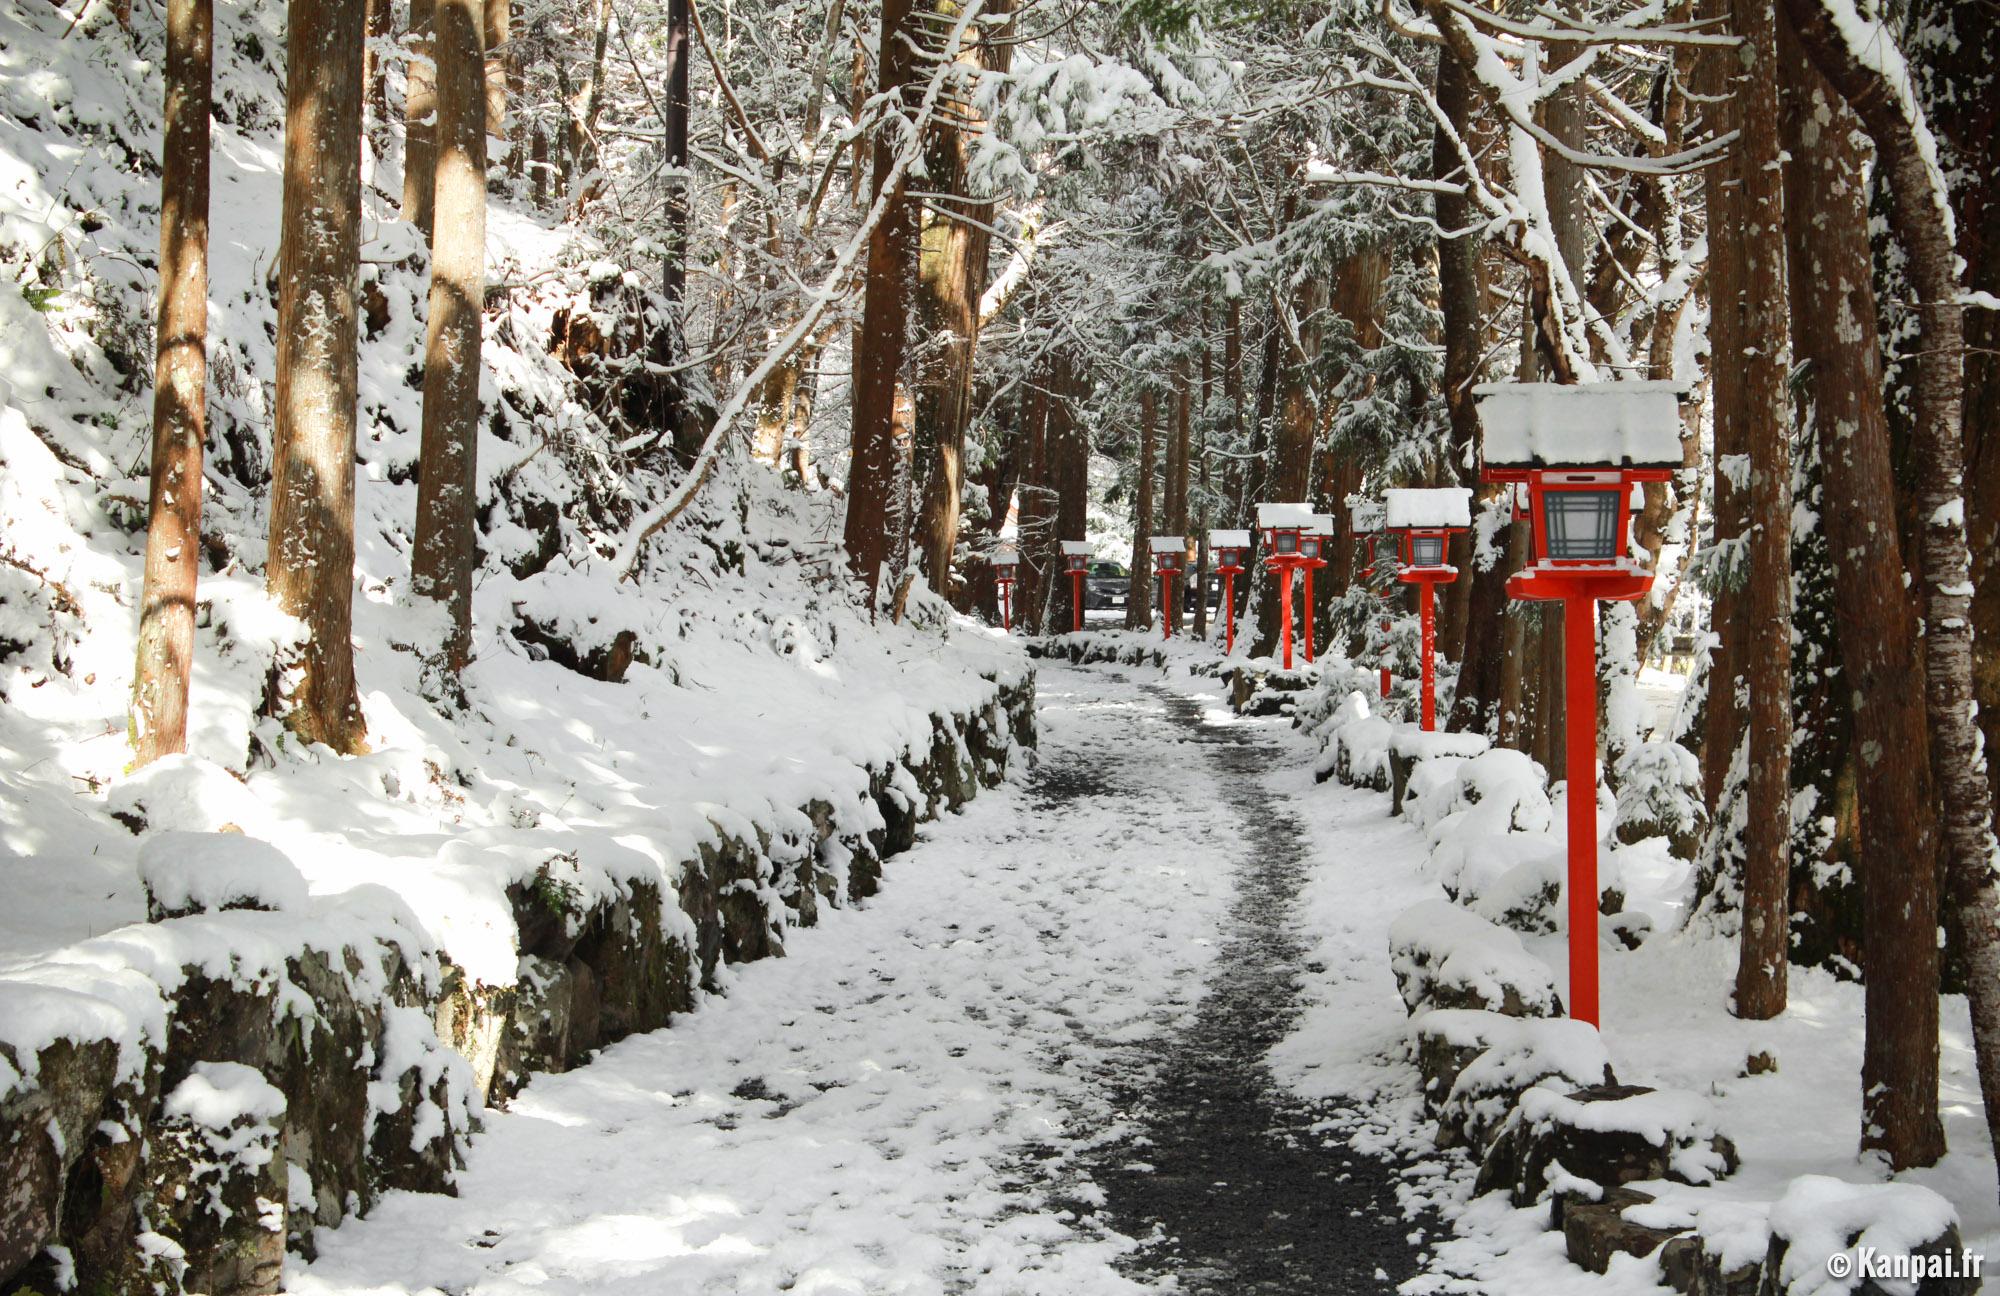 Quel temps Fait-il au Japon en hiver ?